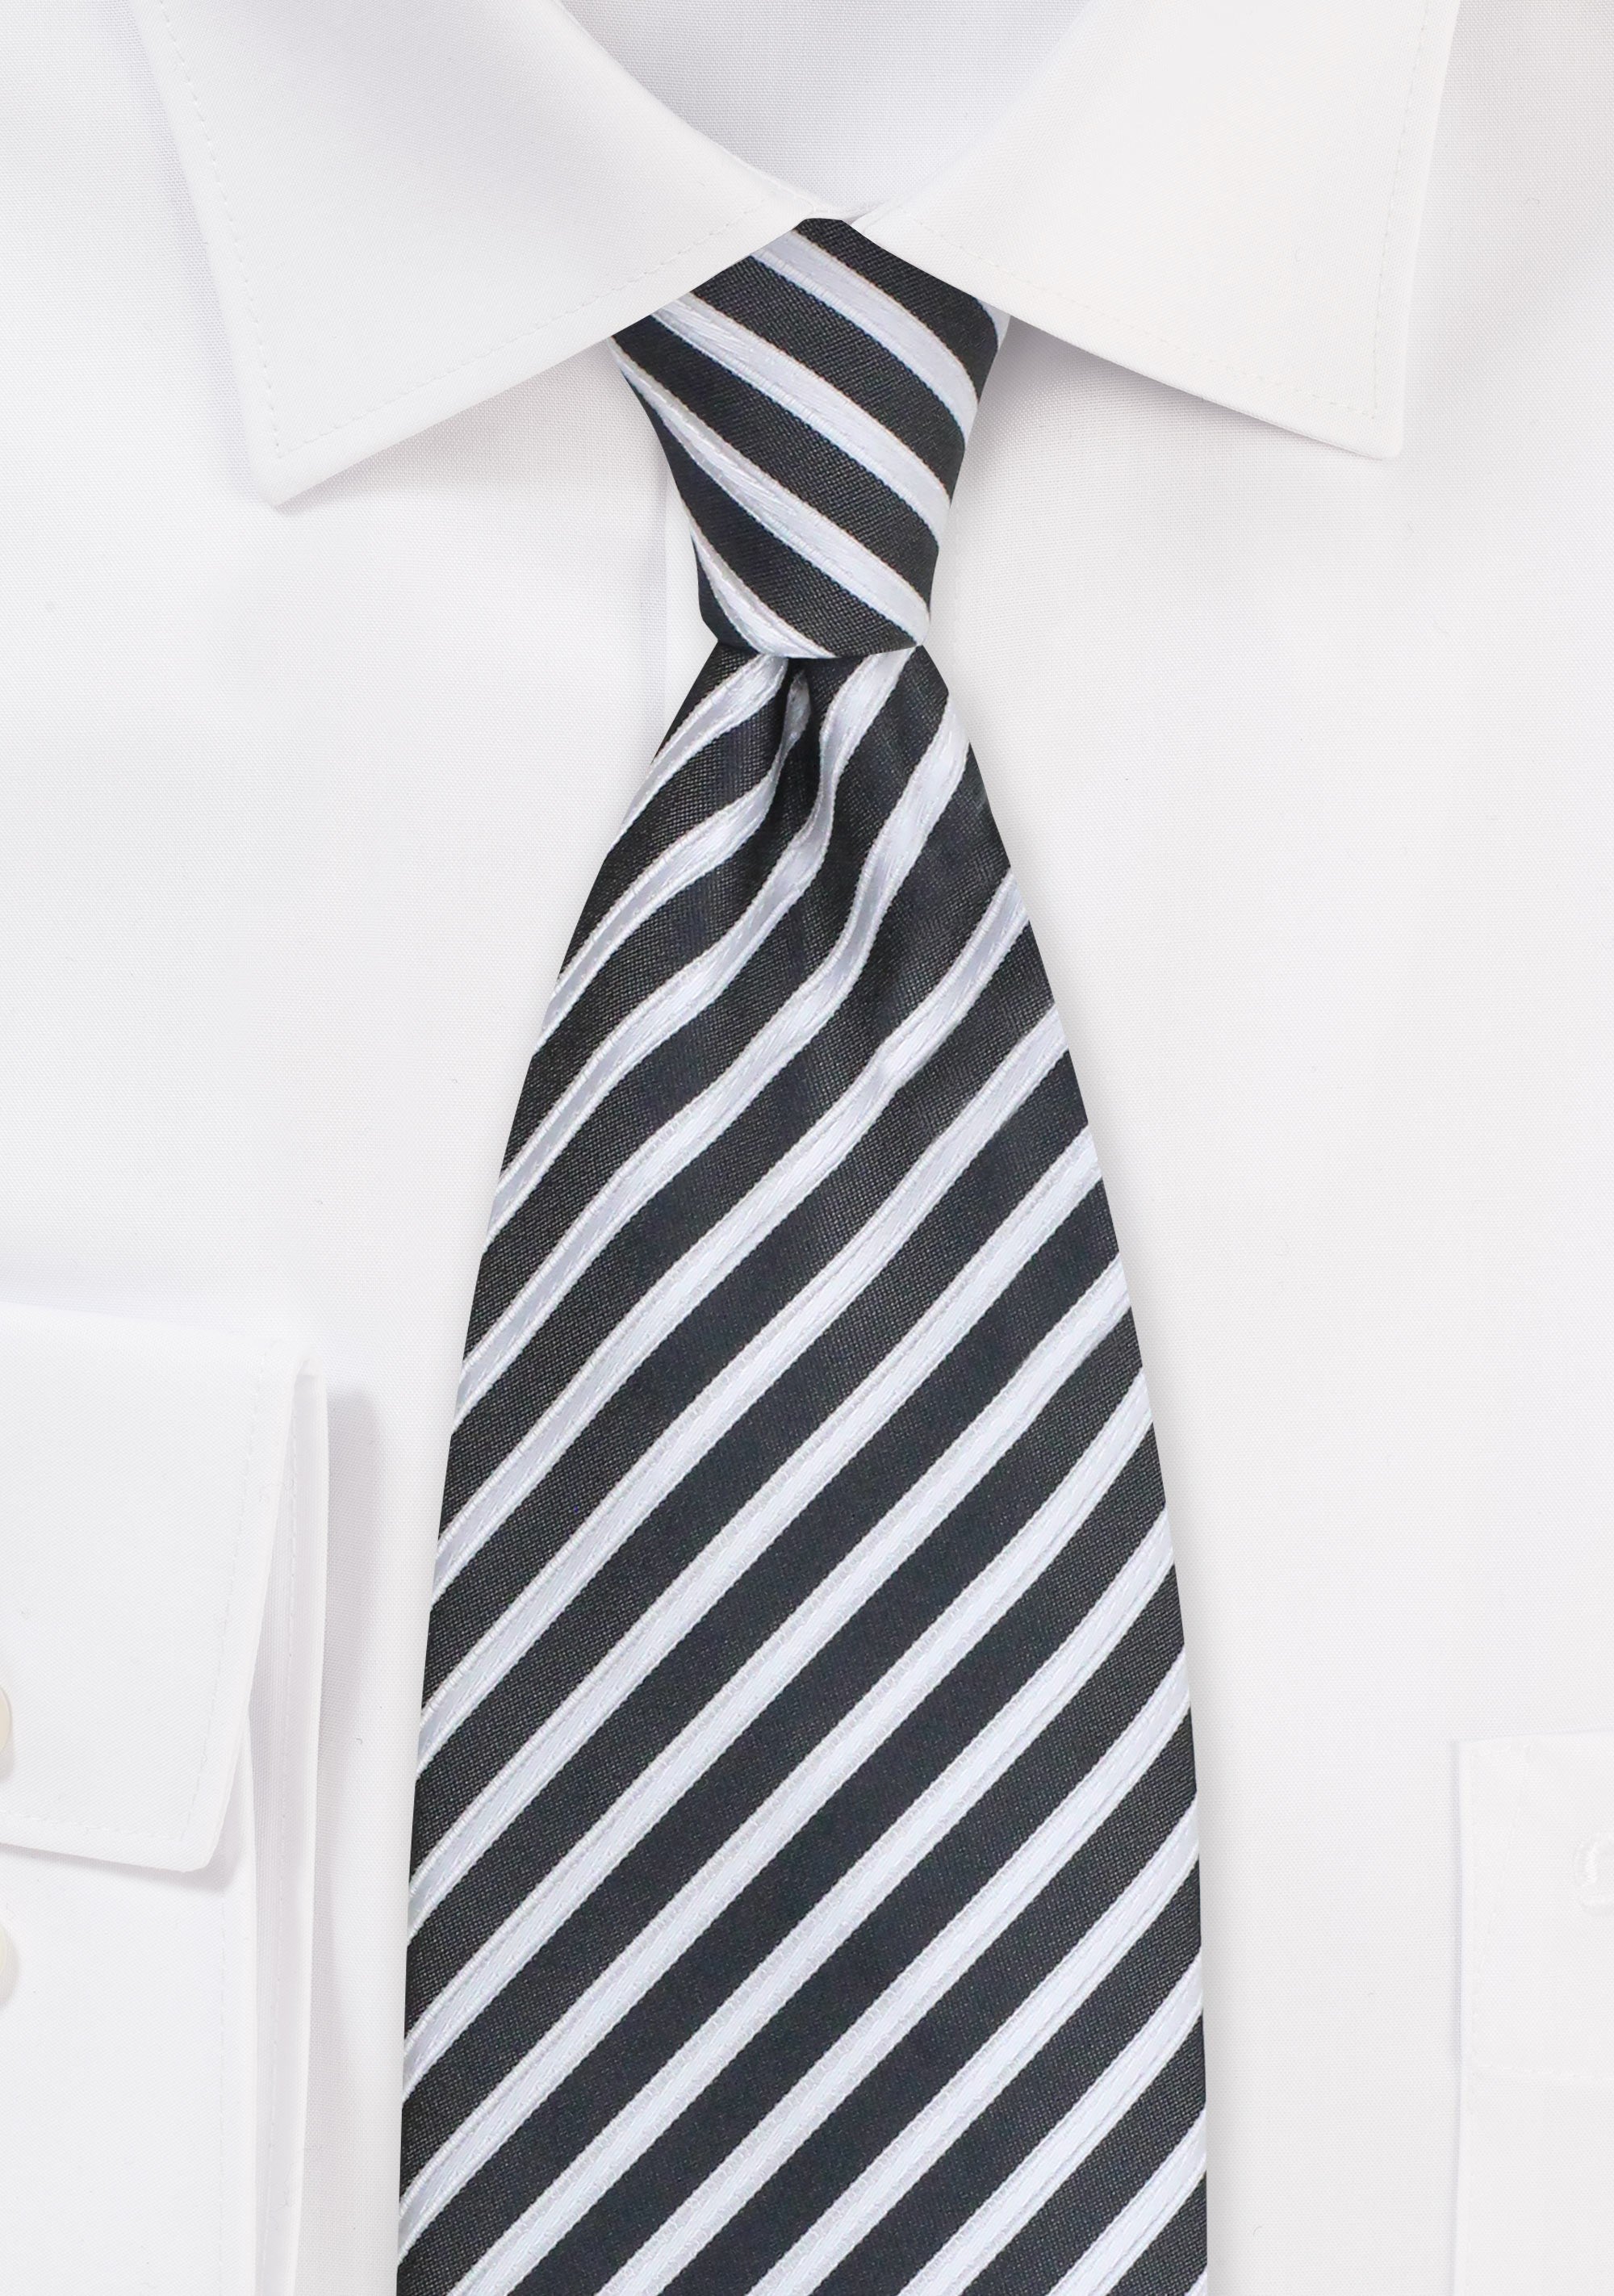 Pewter Summer Striped Necktie